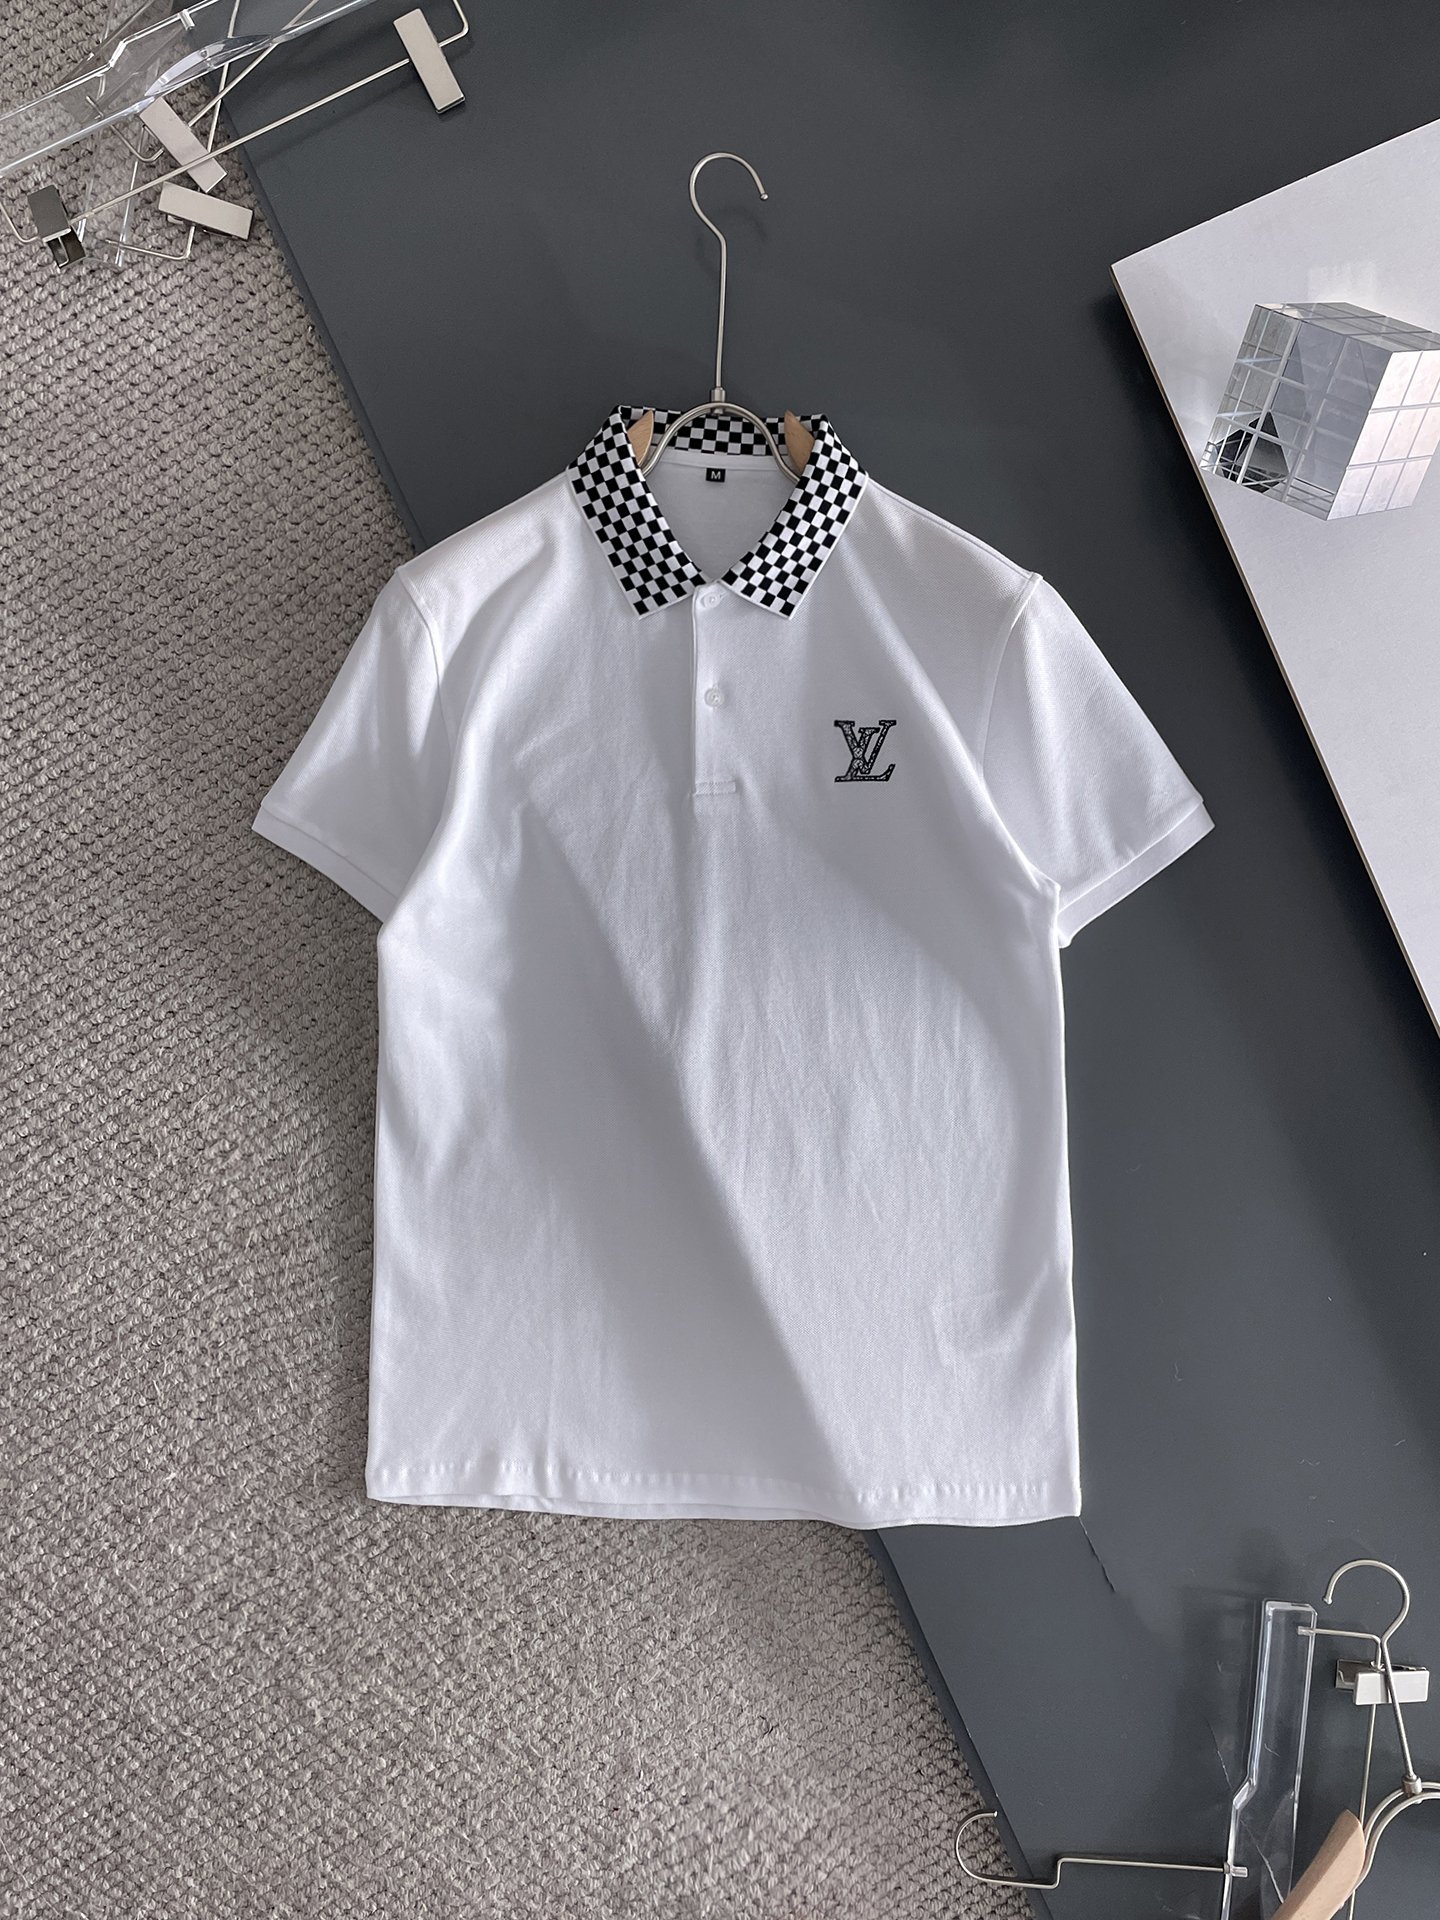 Louis Vuitton Clothing Polo Men Cotton Summer Collection Fashion